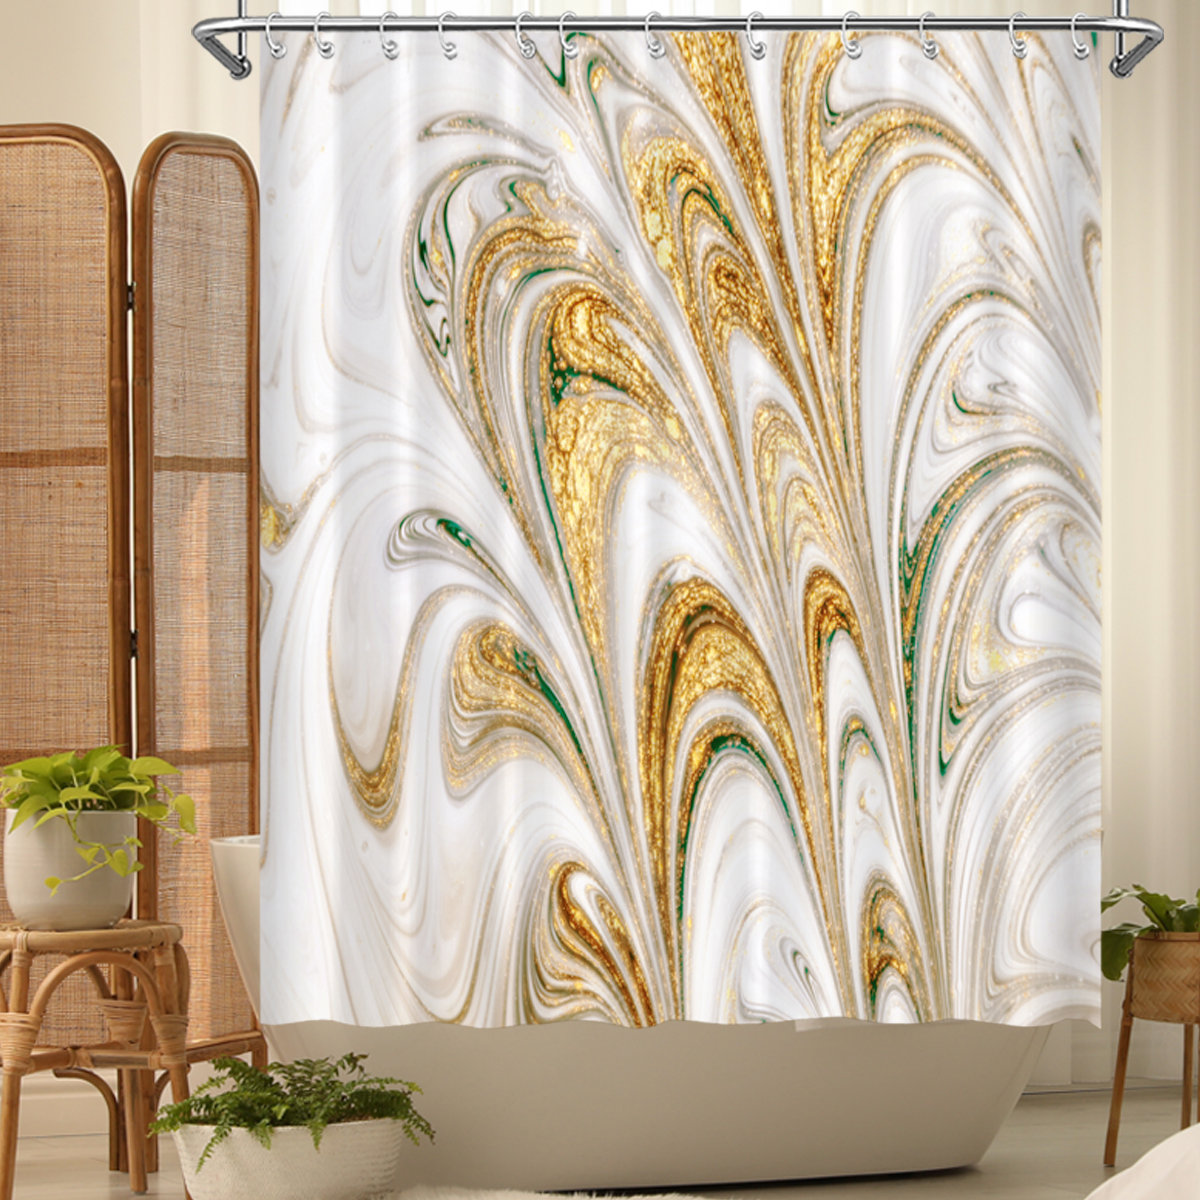 Creative bookshelves Waterproof Polyester Fabric Shower Curtain & Bath Mat Set 